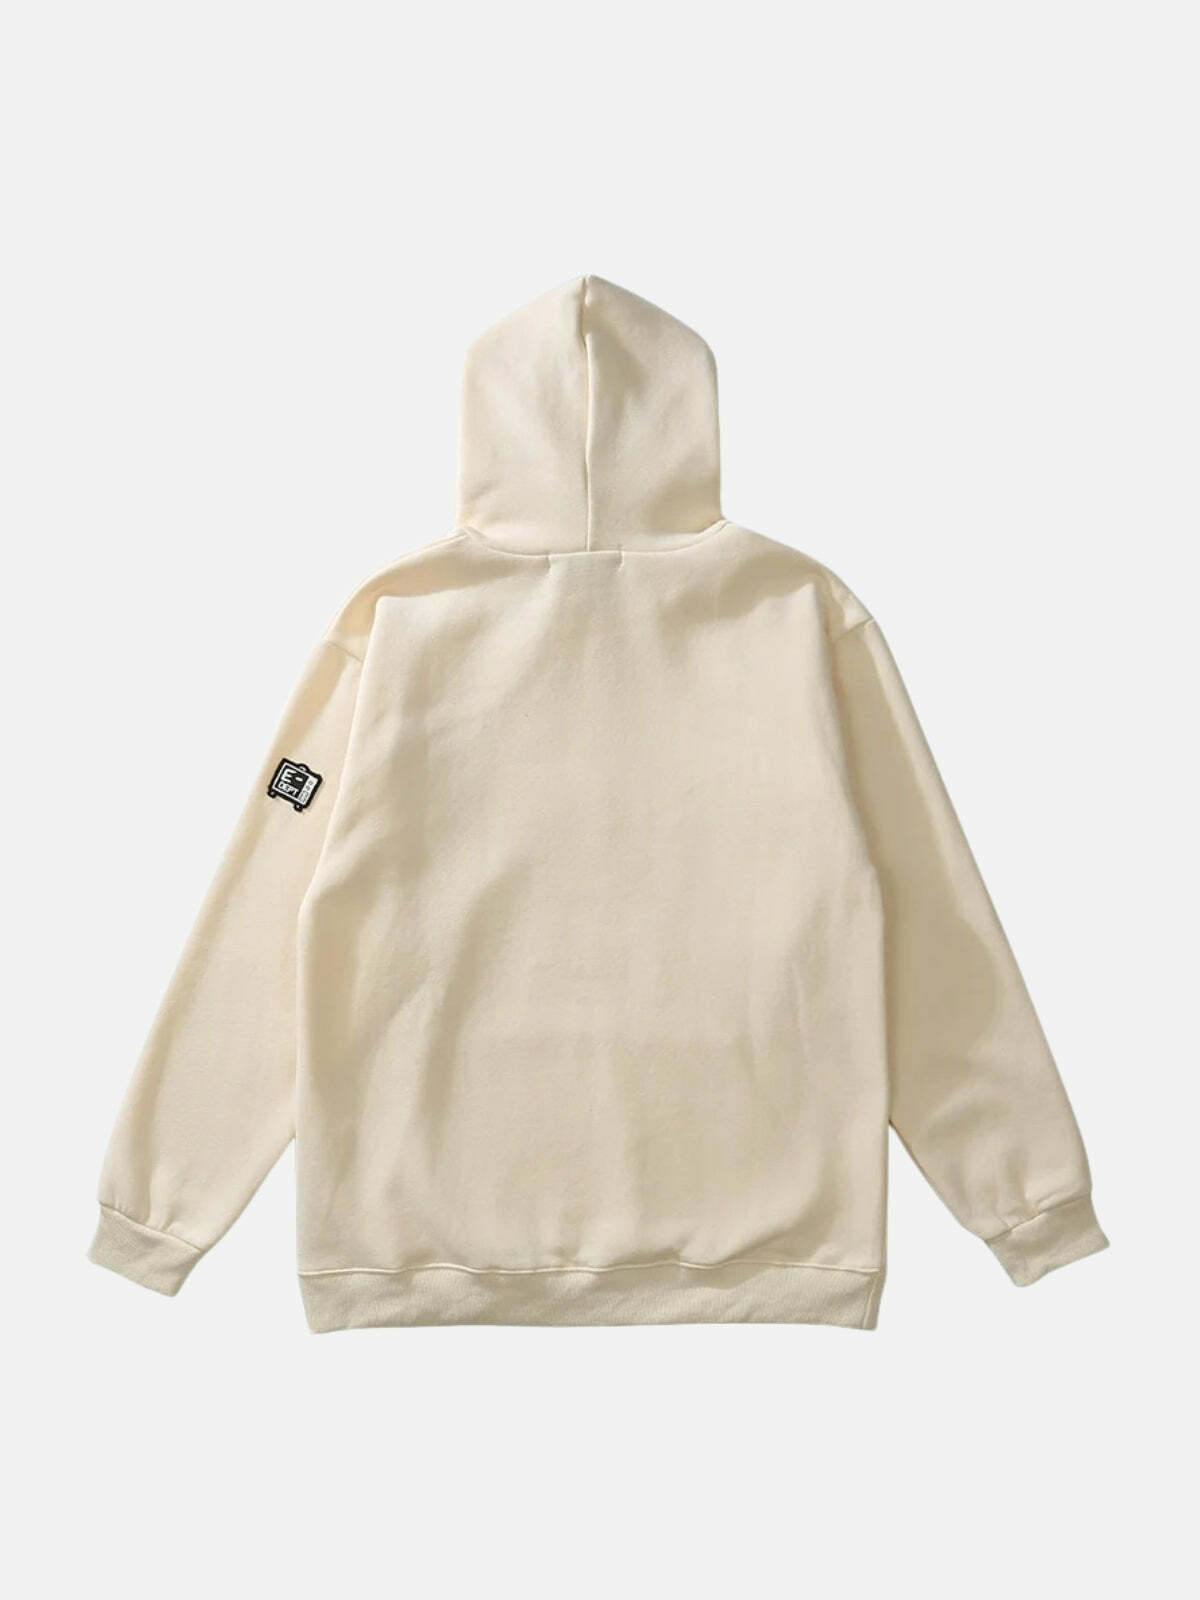 skeleton print hoodie edgy & urban streetwear 8981